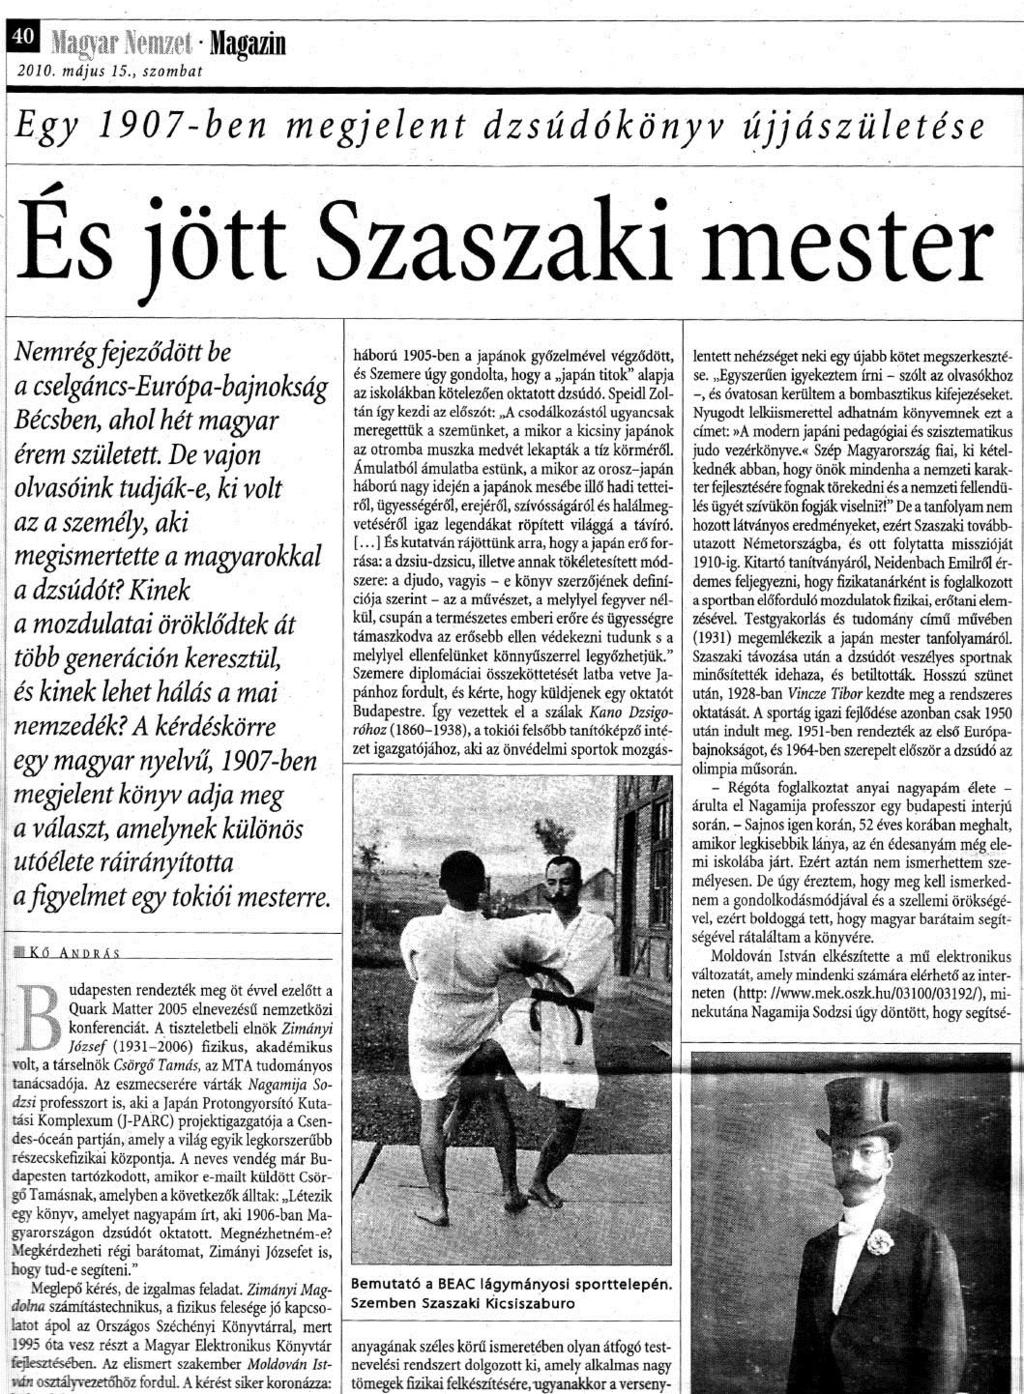 Newspaper (March, 2010) Magyar